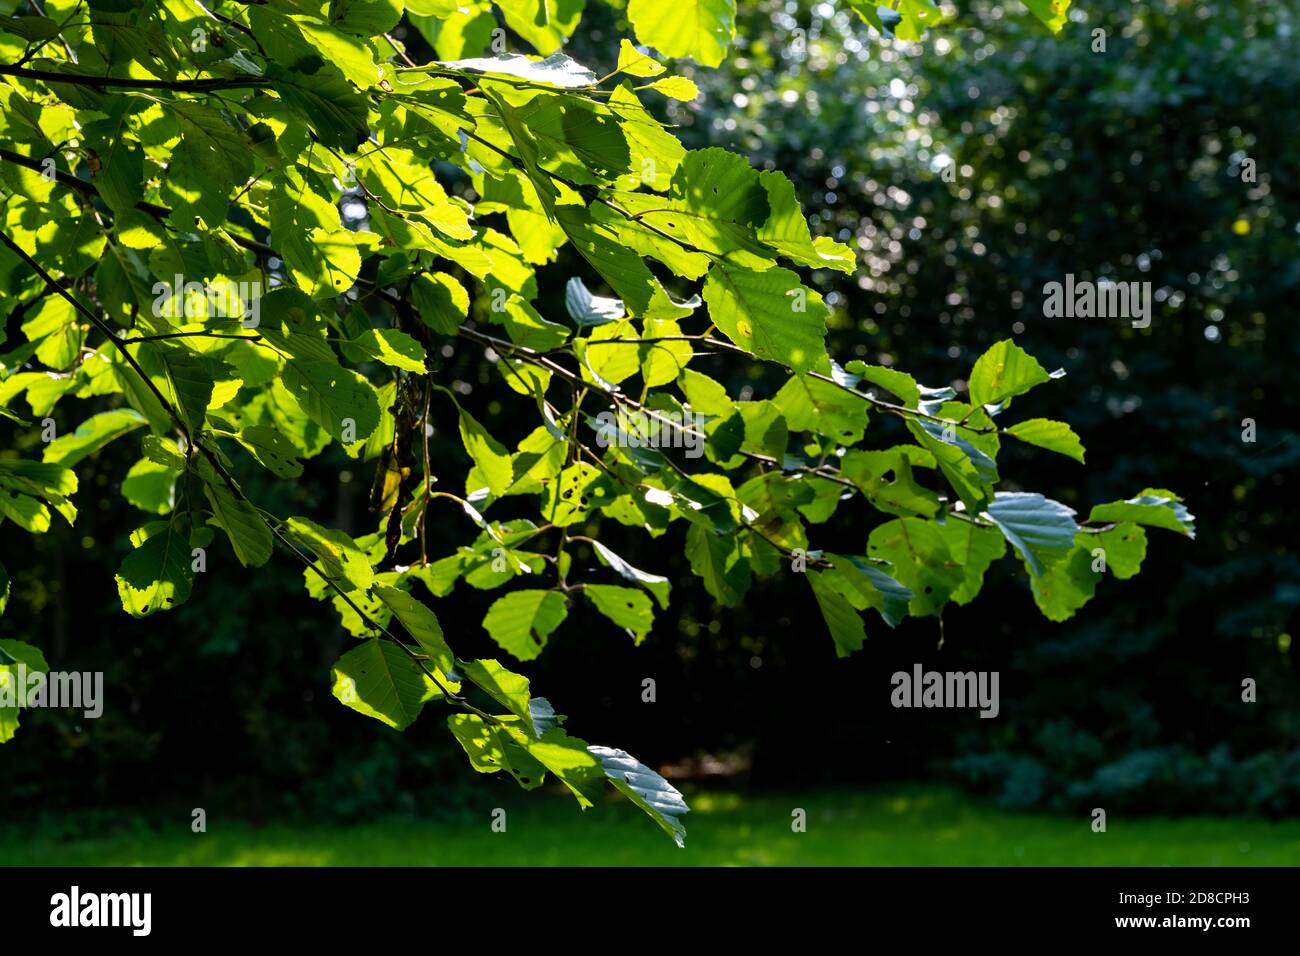 Foglie su un ramo di albero illuminato dal sole. Foto della contea di Scania, Svezia meridionale Foto Stock